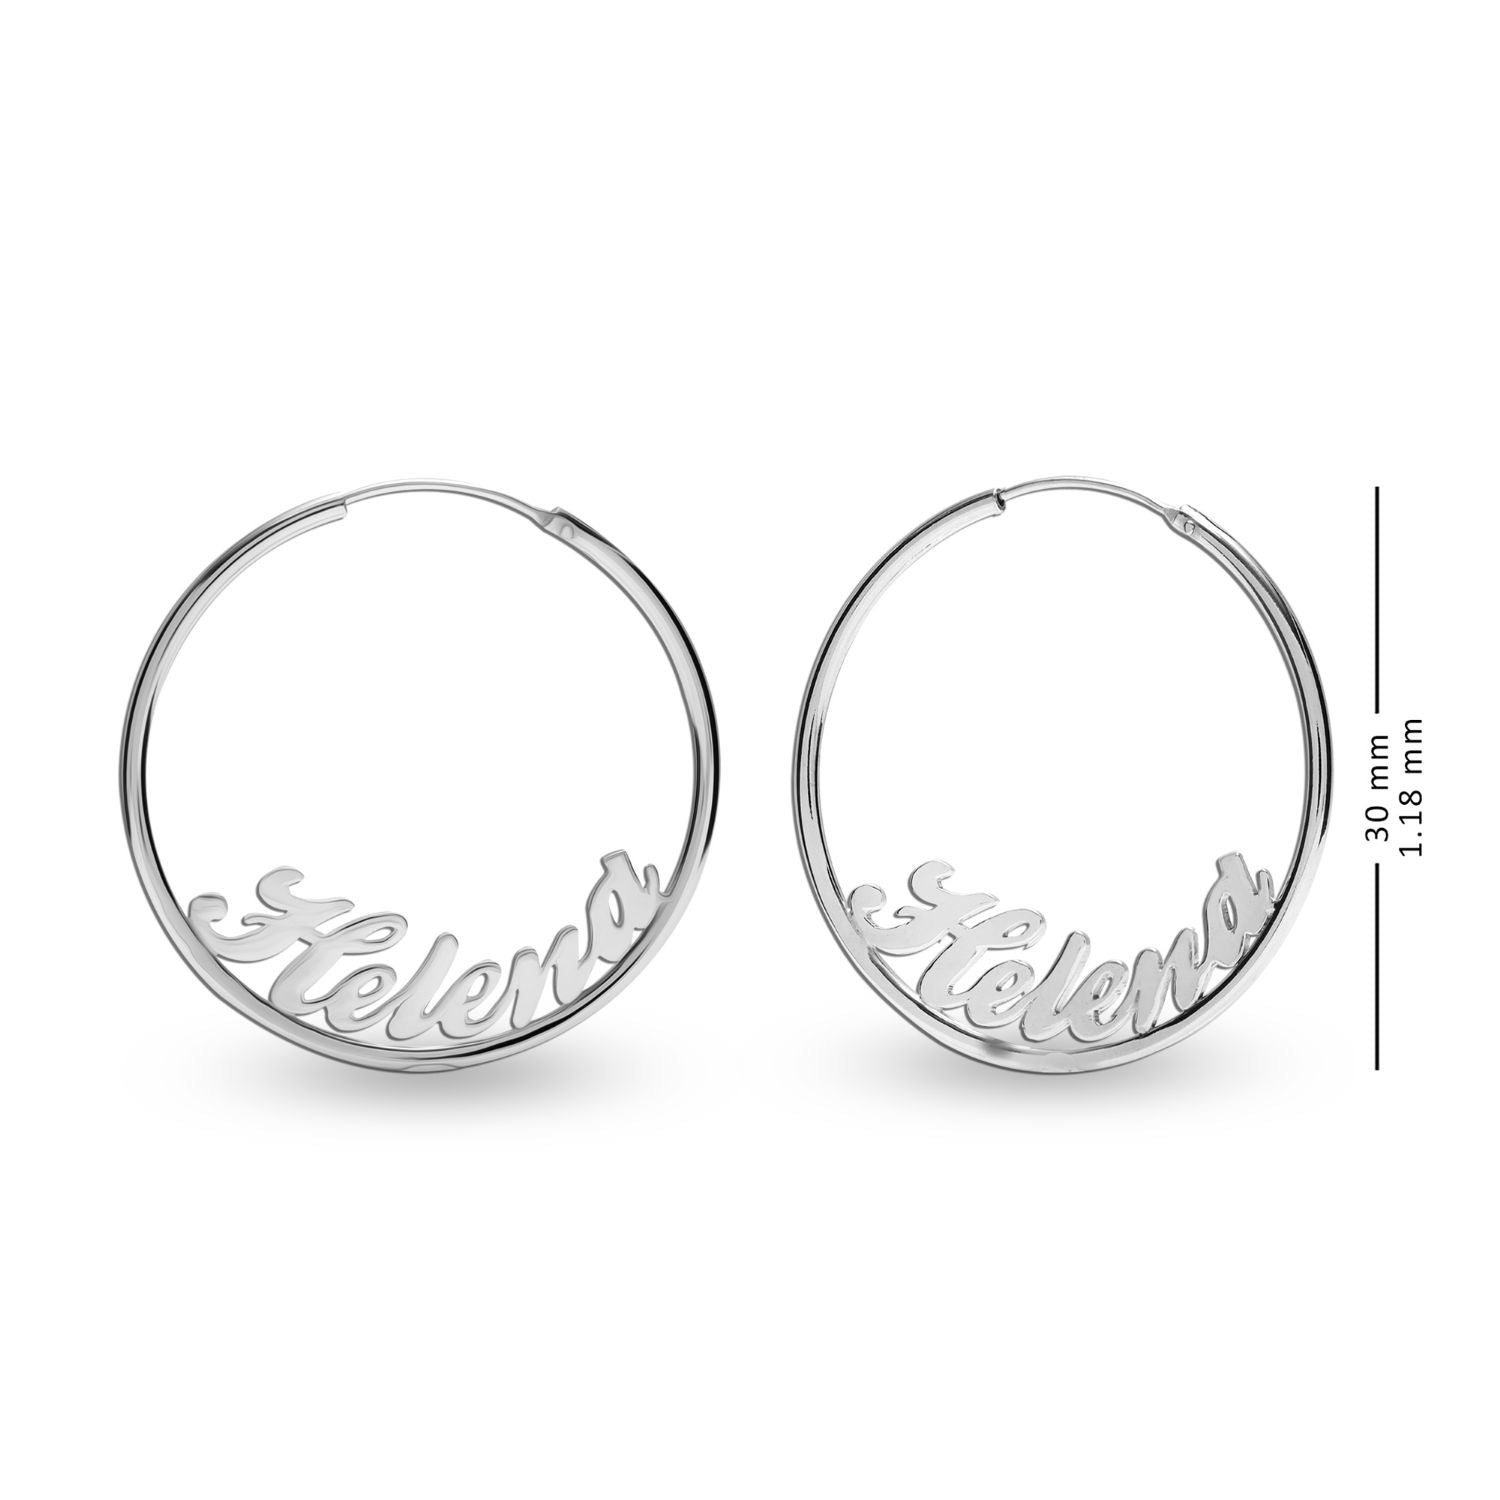 Personalised 925 Sterling Silver Name Endless Hoop Earrings for Teen Women